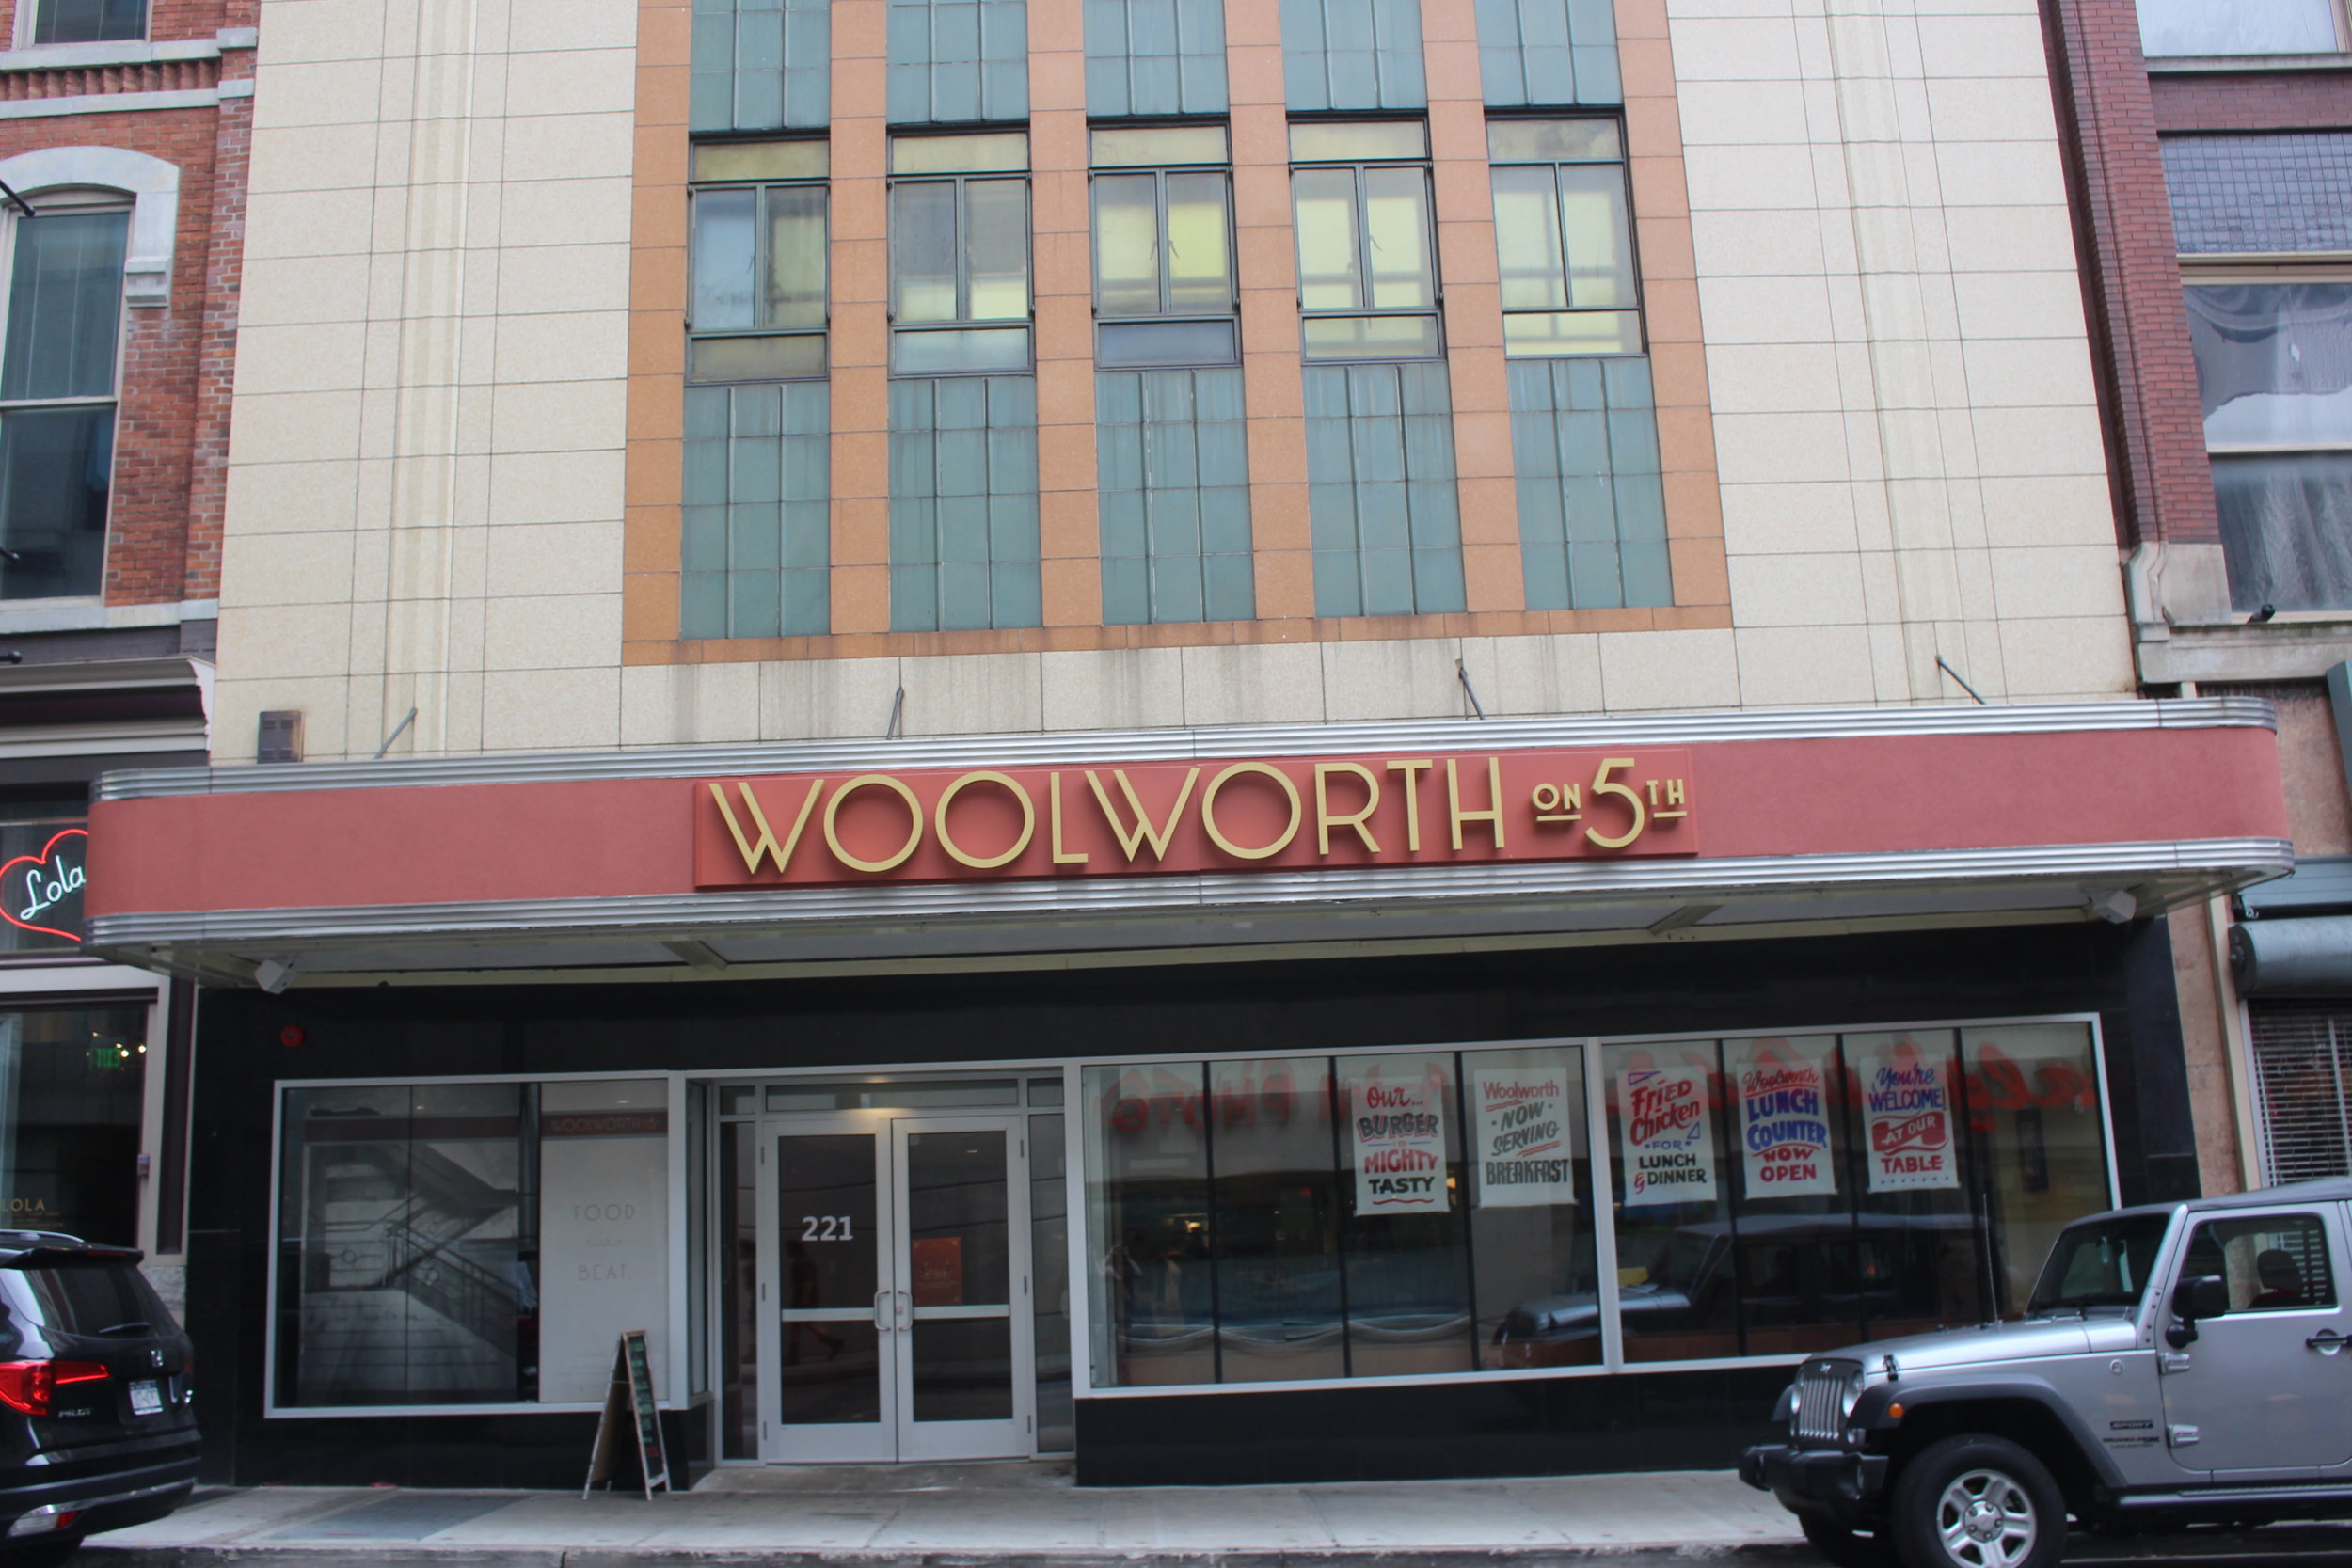 Woolworth on 5th - Nashville, TN